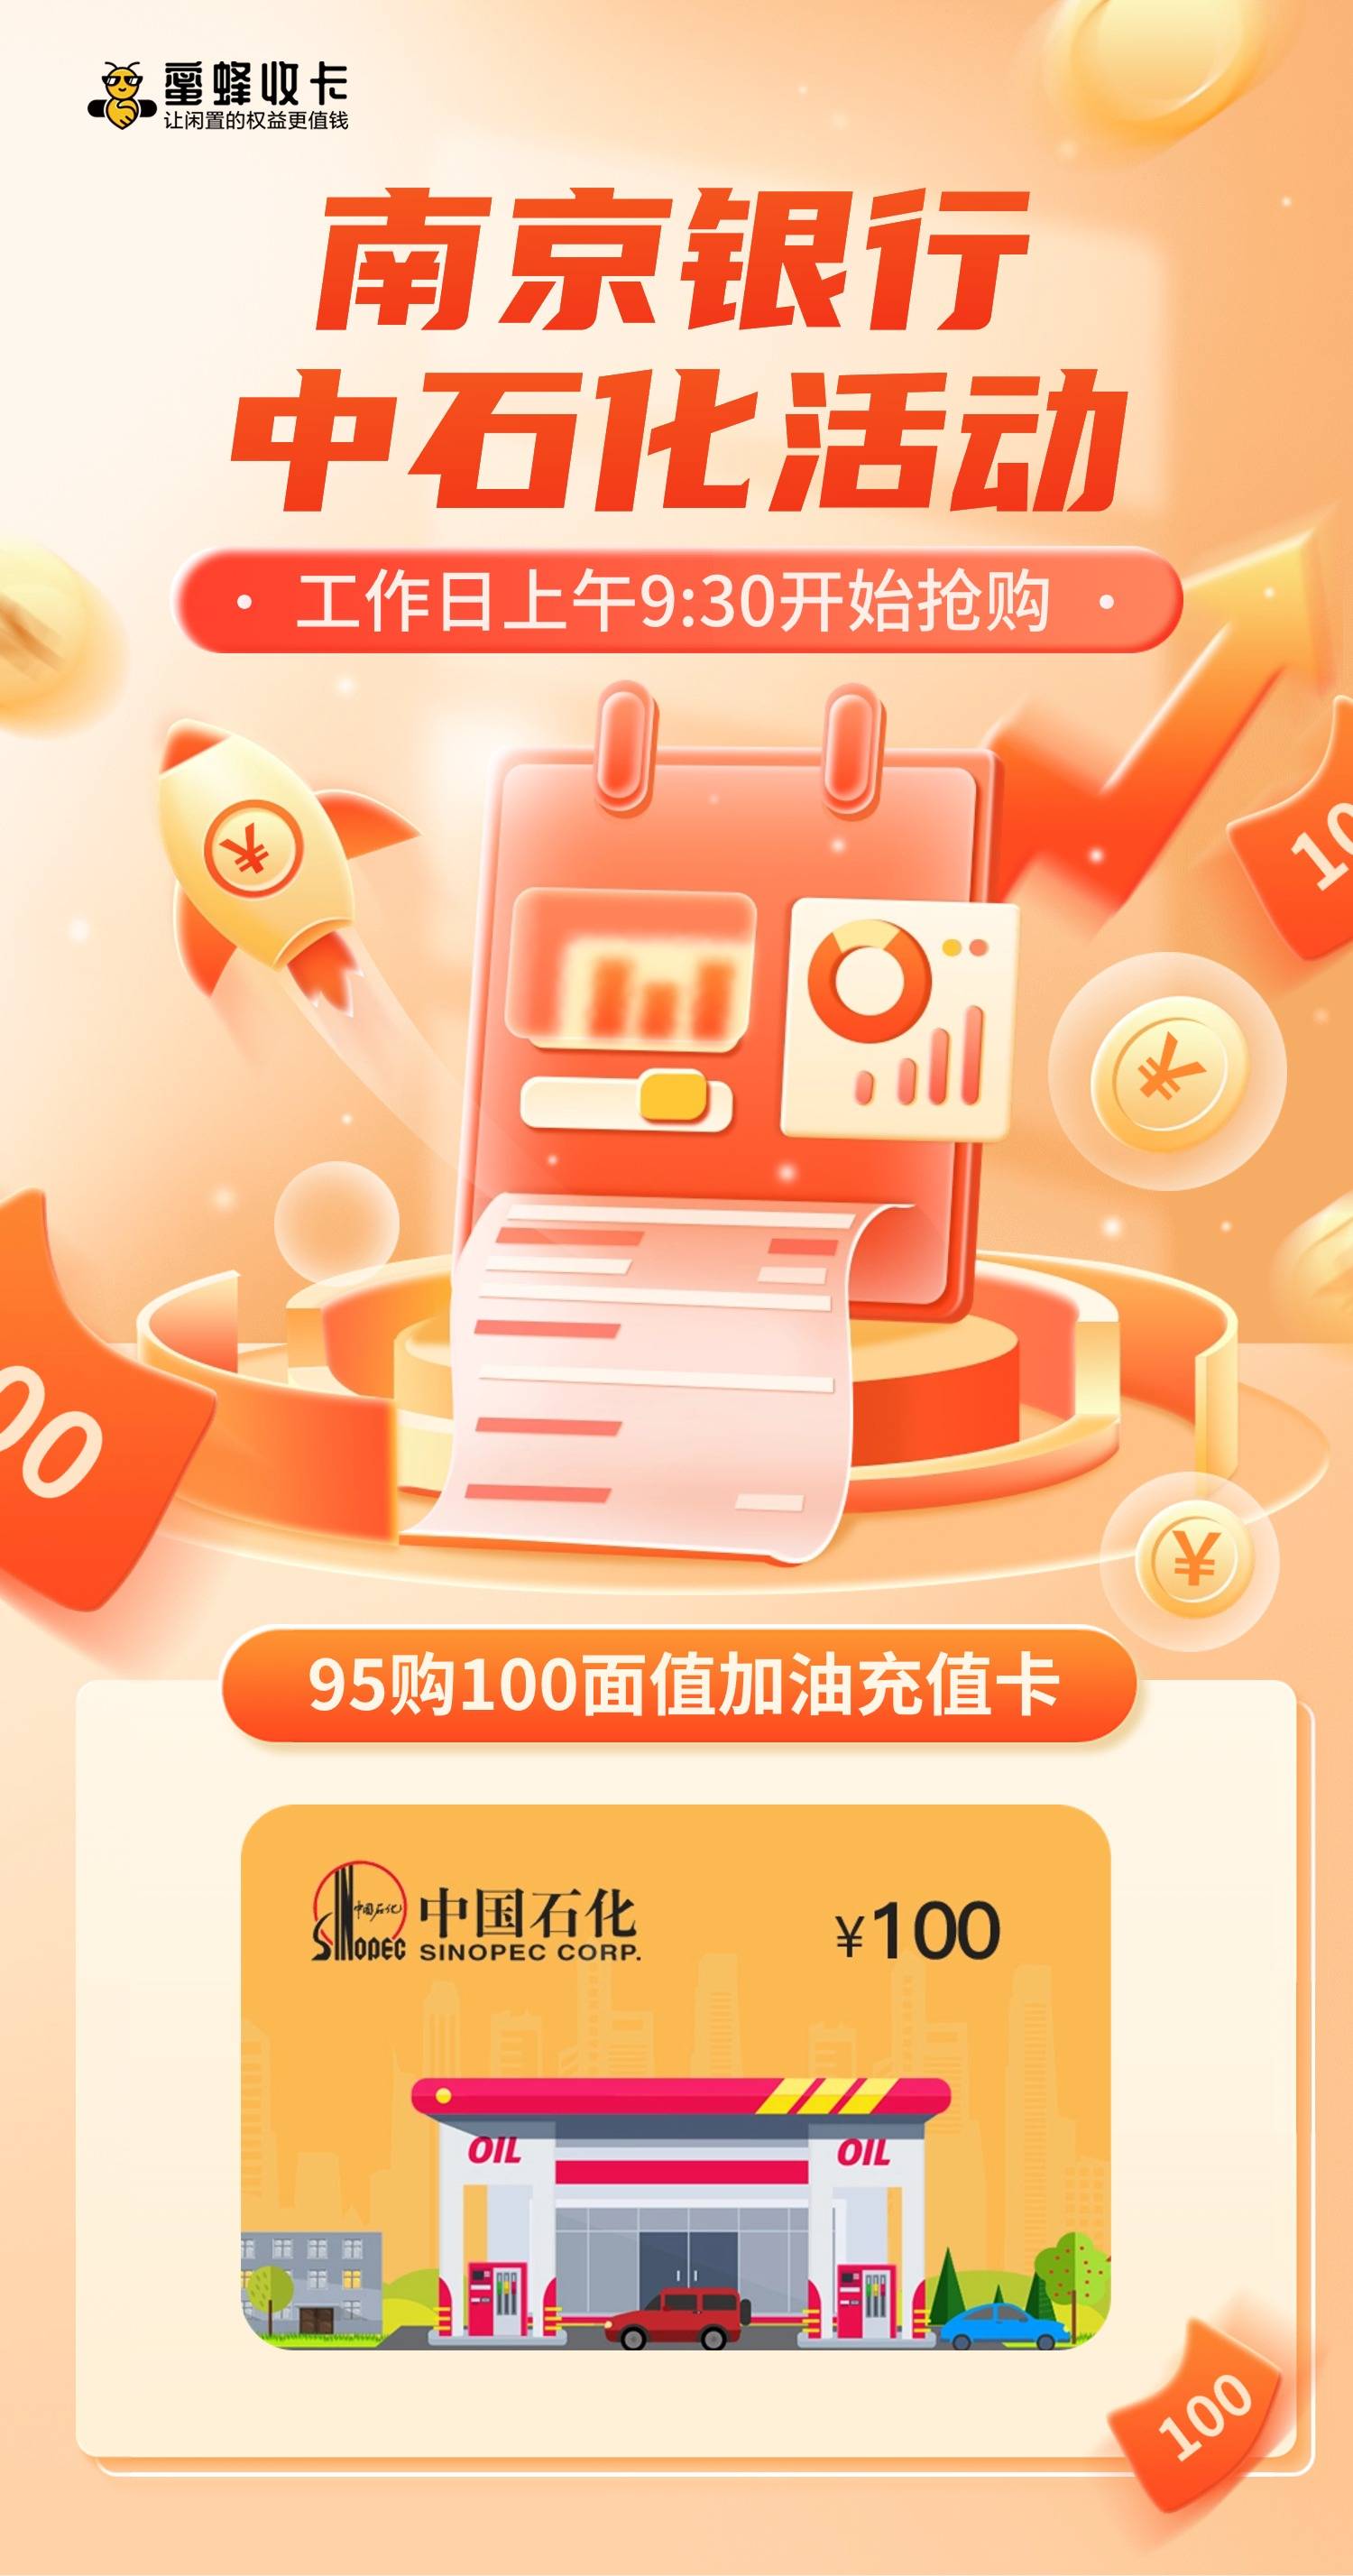 【薅券攻略】南京银行中石化活动,95购中石化100面值加油充值卡!